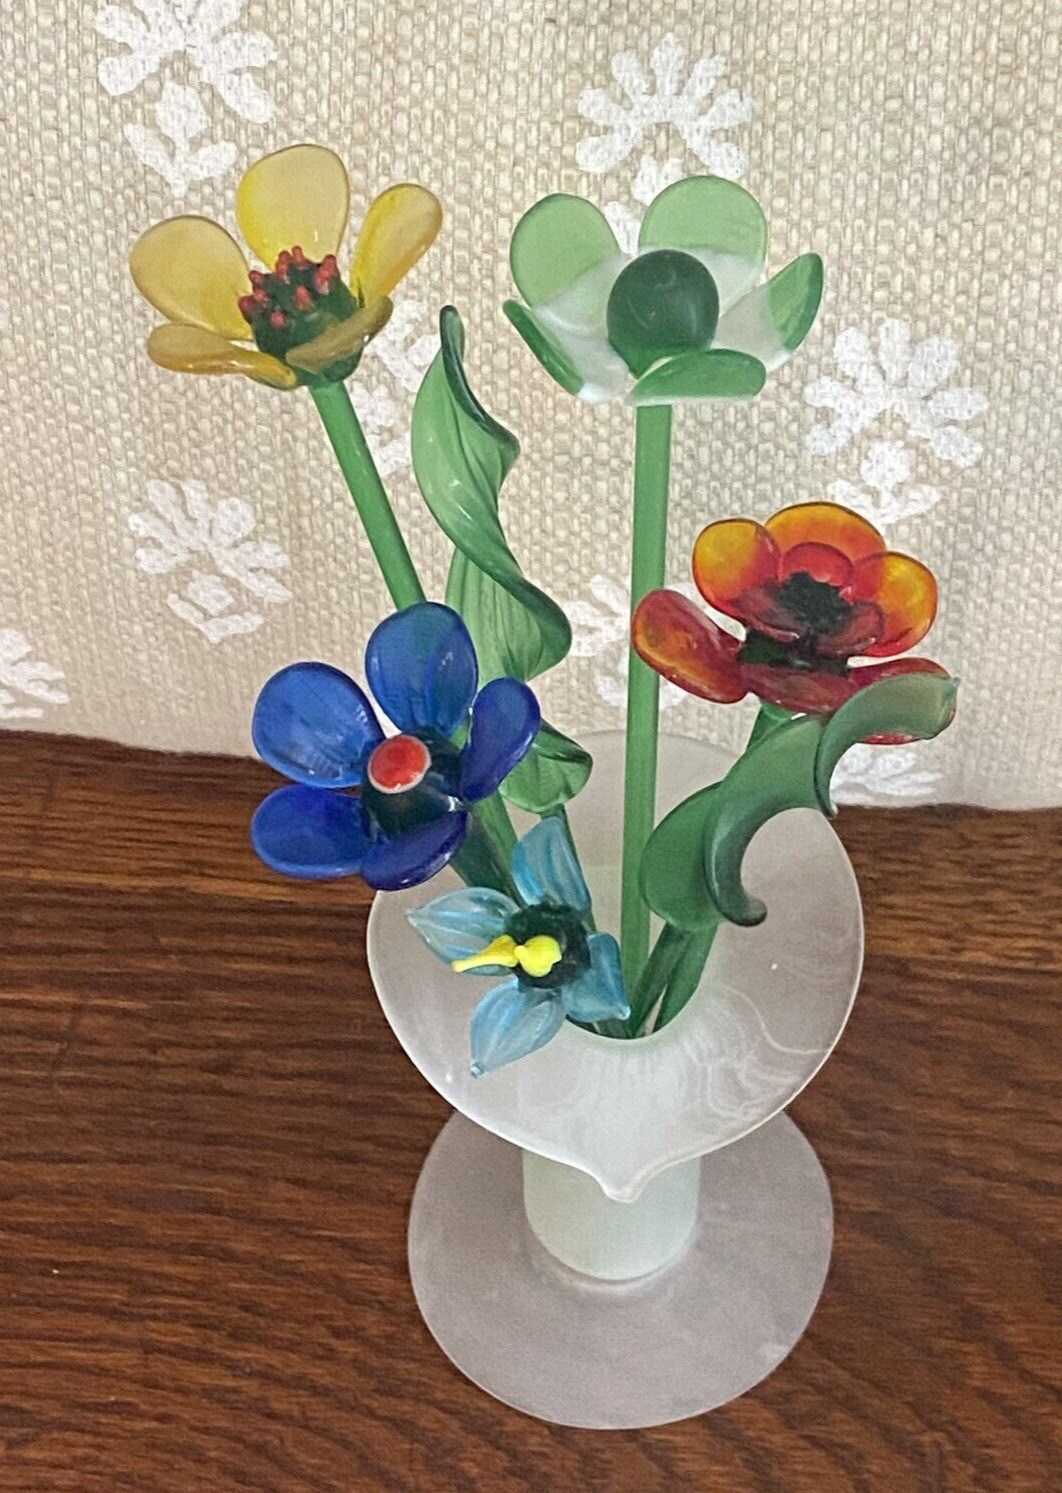 Vintage Hand Blown Glass Flower Bouquet in Frosted Vase Valentine